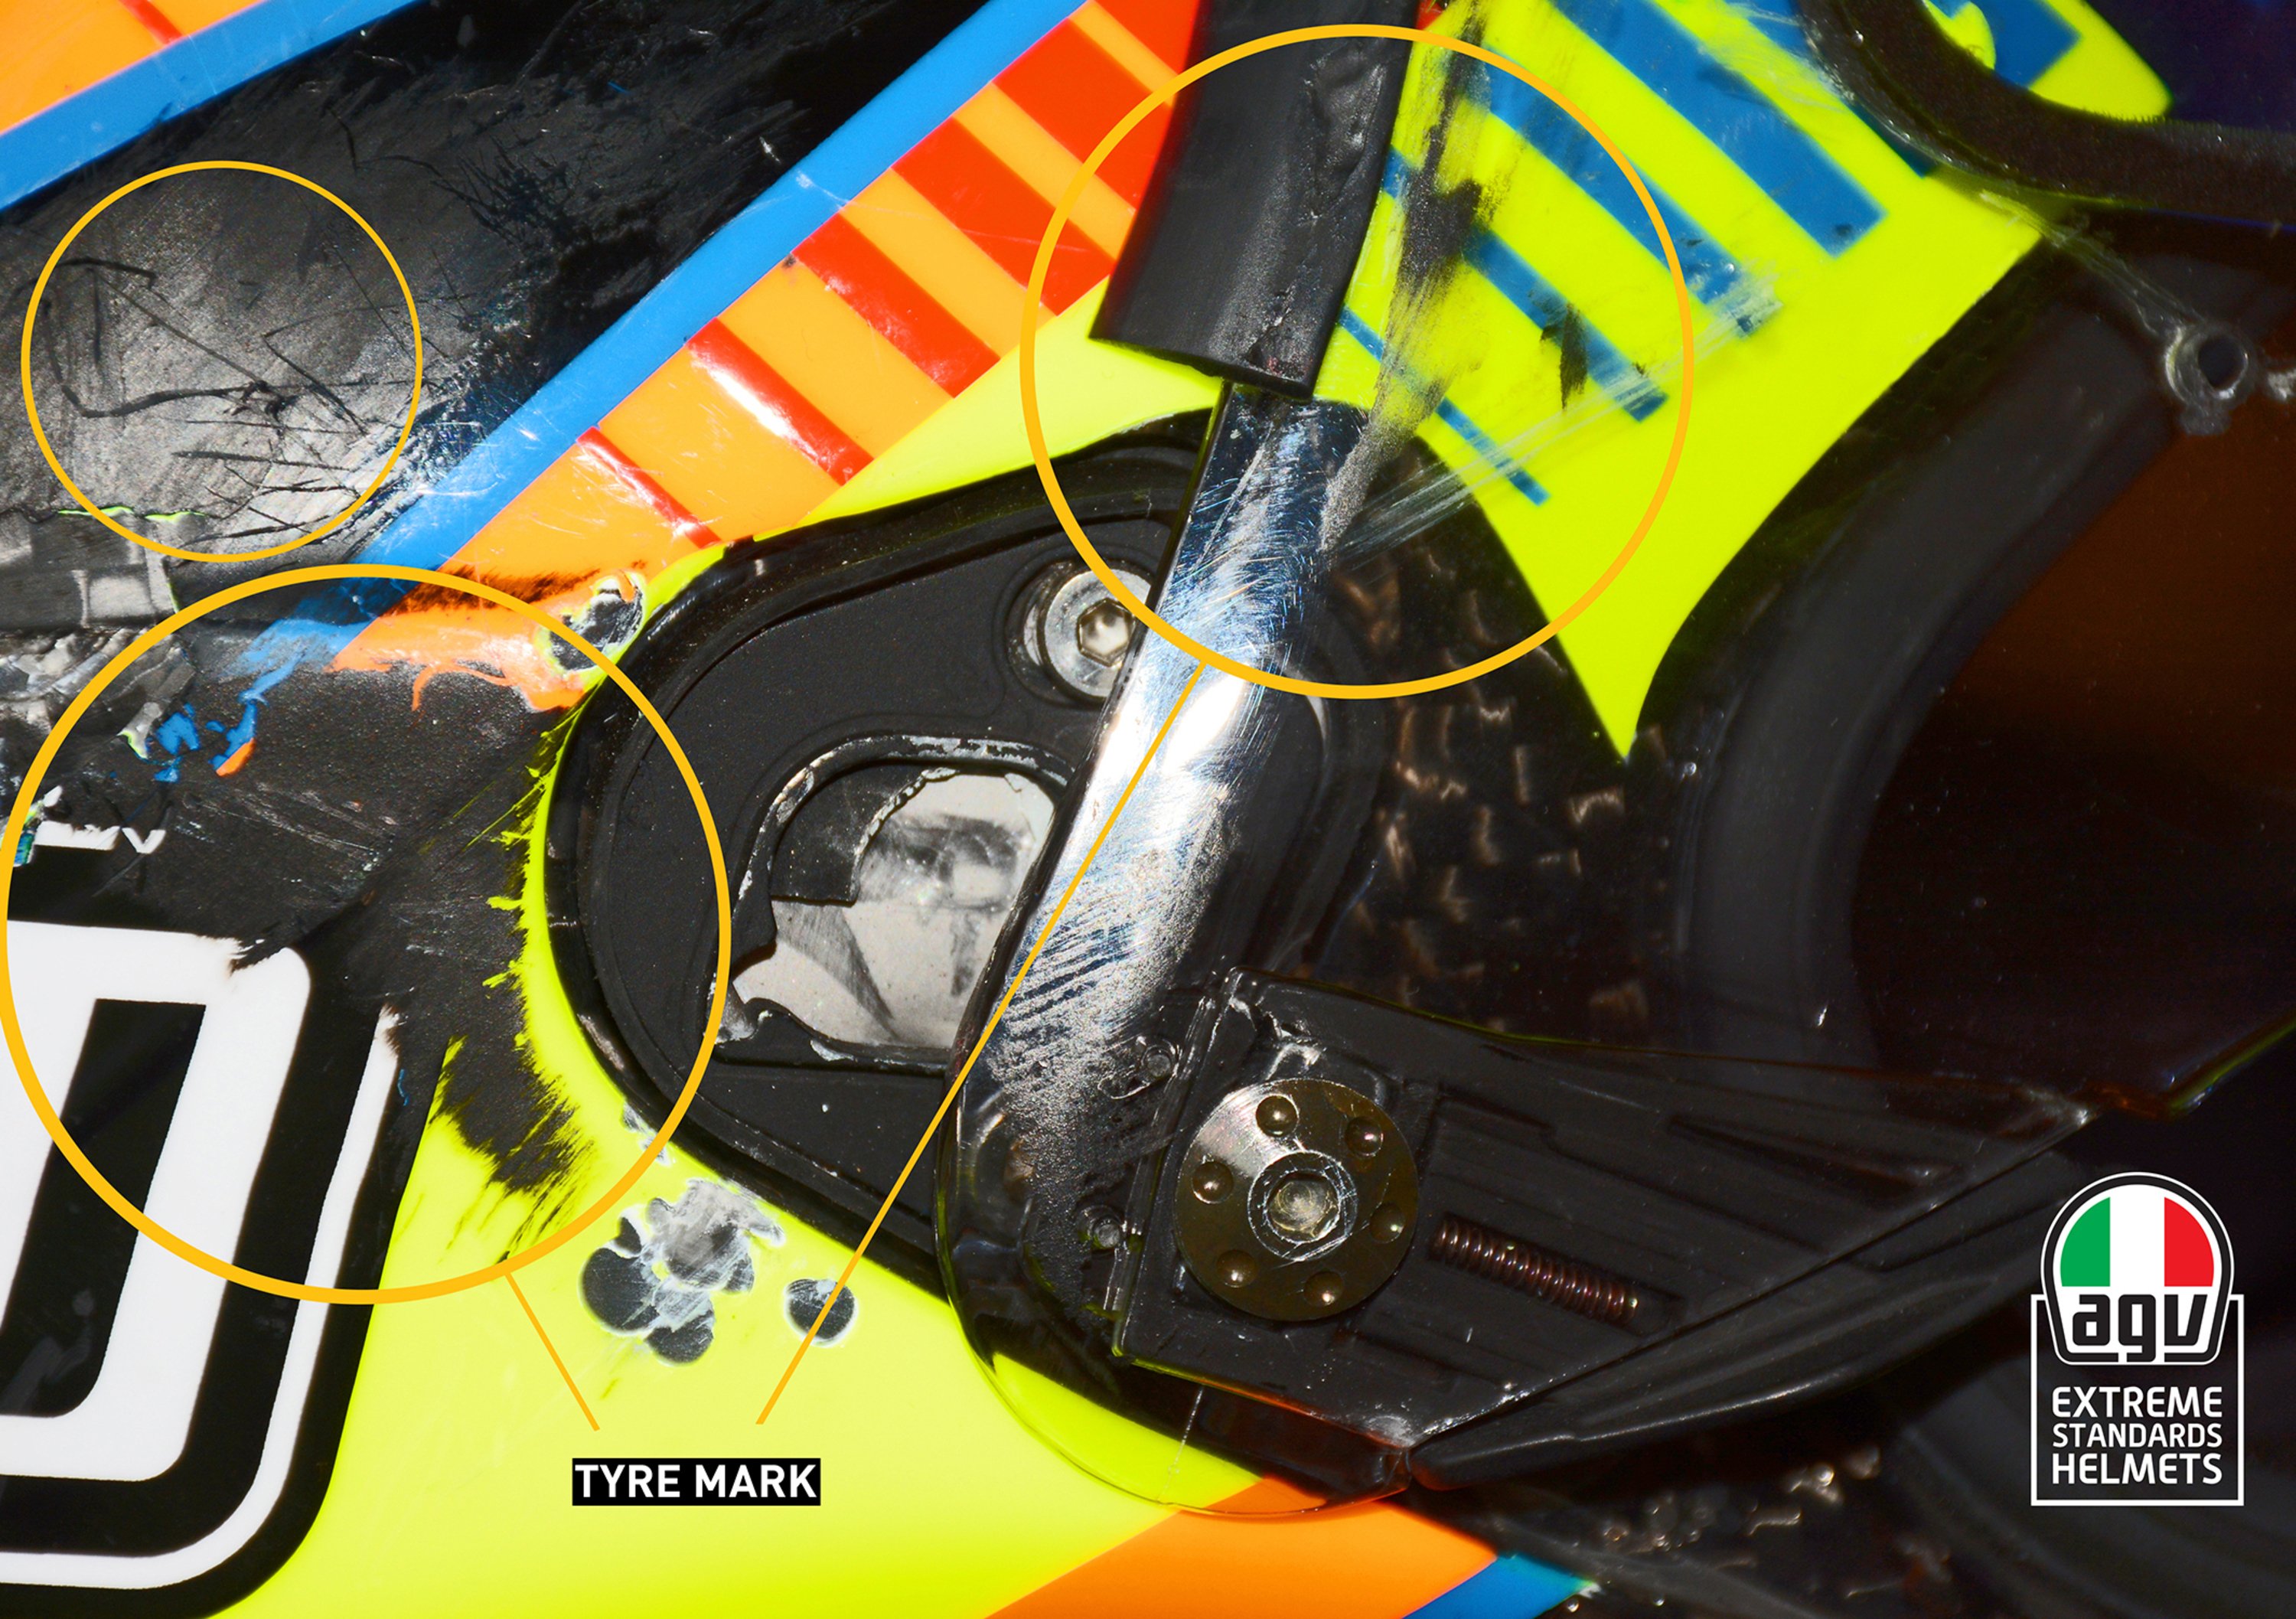 AGV ha analizzato il casco di Rossi dopo la caduta di Aragon